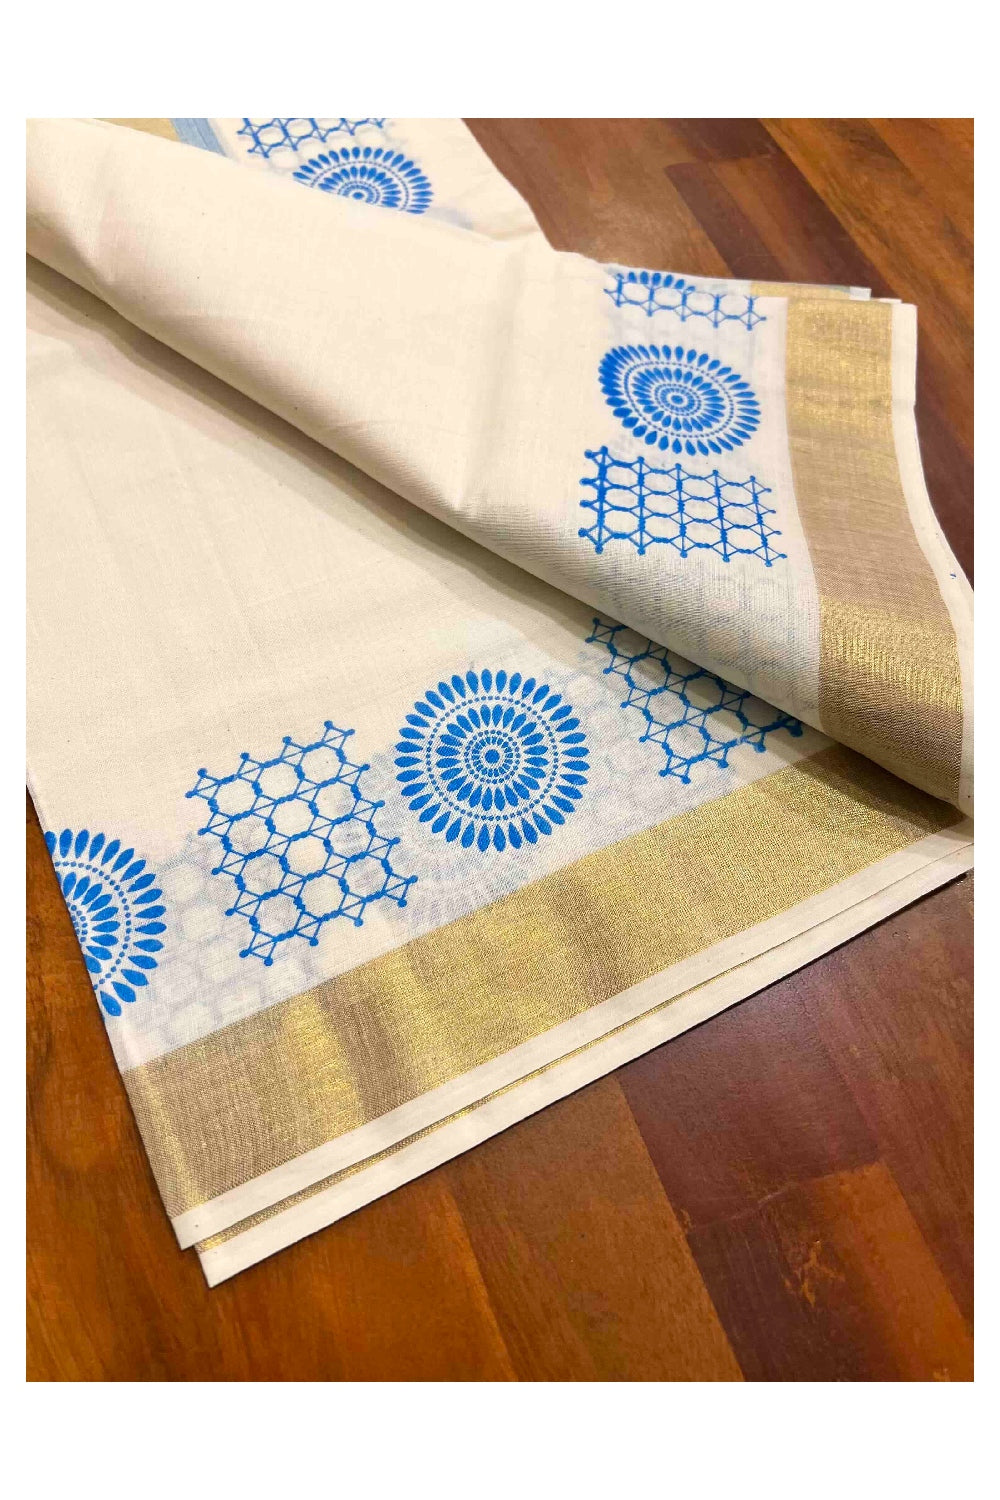 Kerala Cotton Single Set Mundu (Mundum Neriyathum) with Blue Block Prints with Kasavu Border  - 2.80Mtrs